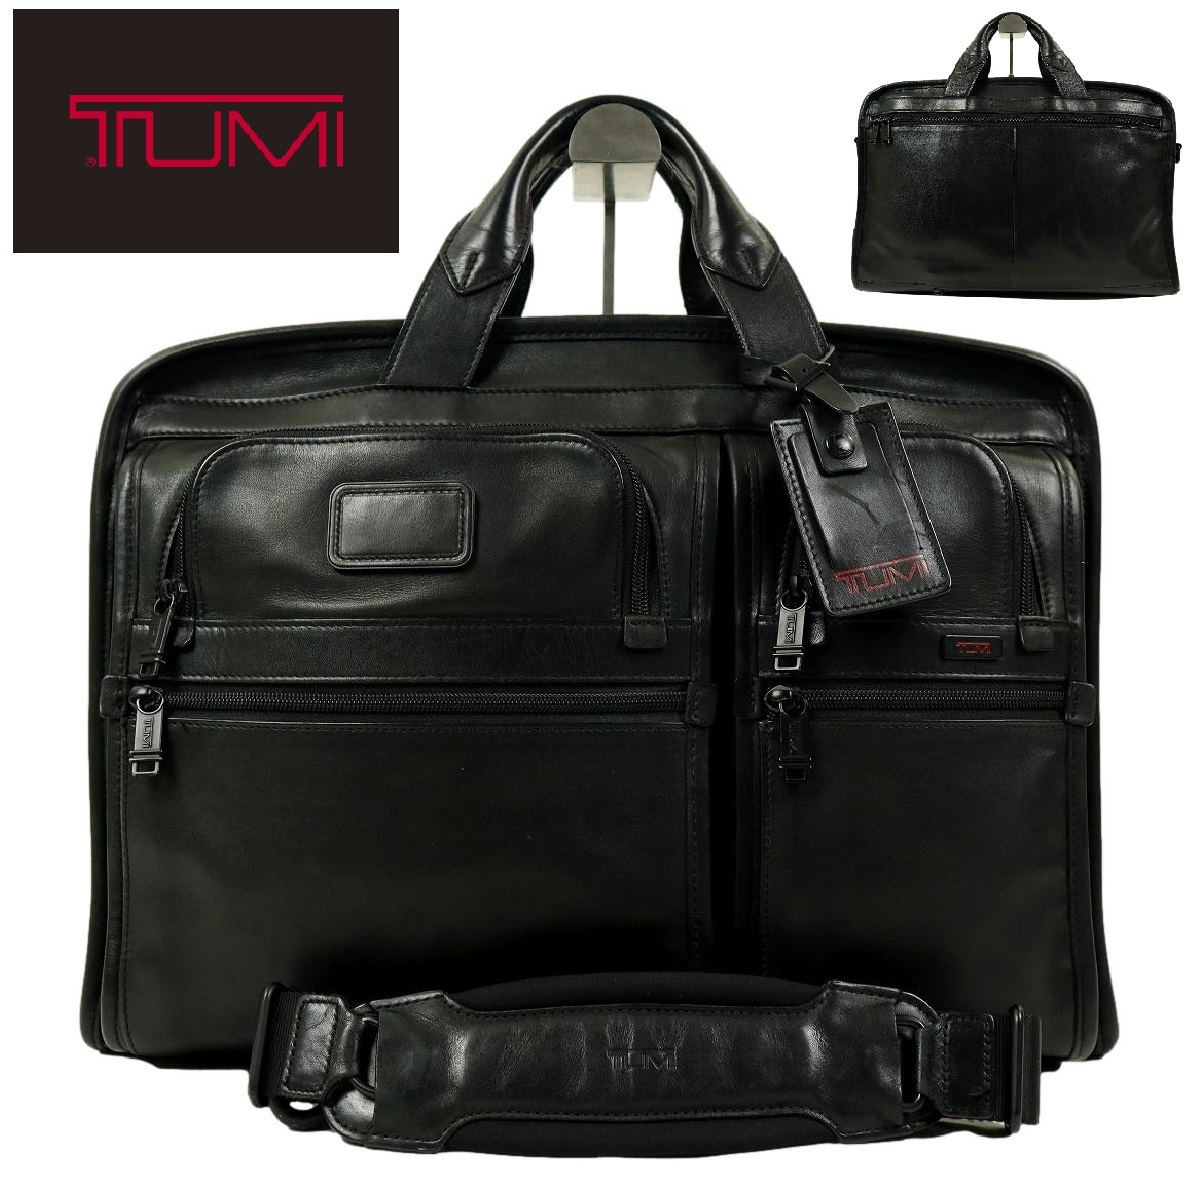 【S2518】【美品】TUMI トゥミ 2wayバッグ ショルダーバッグ ビジネスバッグ ブリーフケース 書類カバン オールレザー